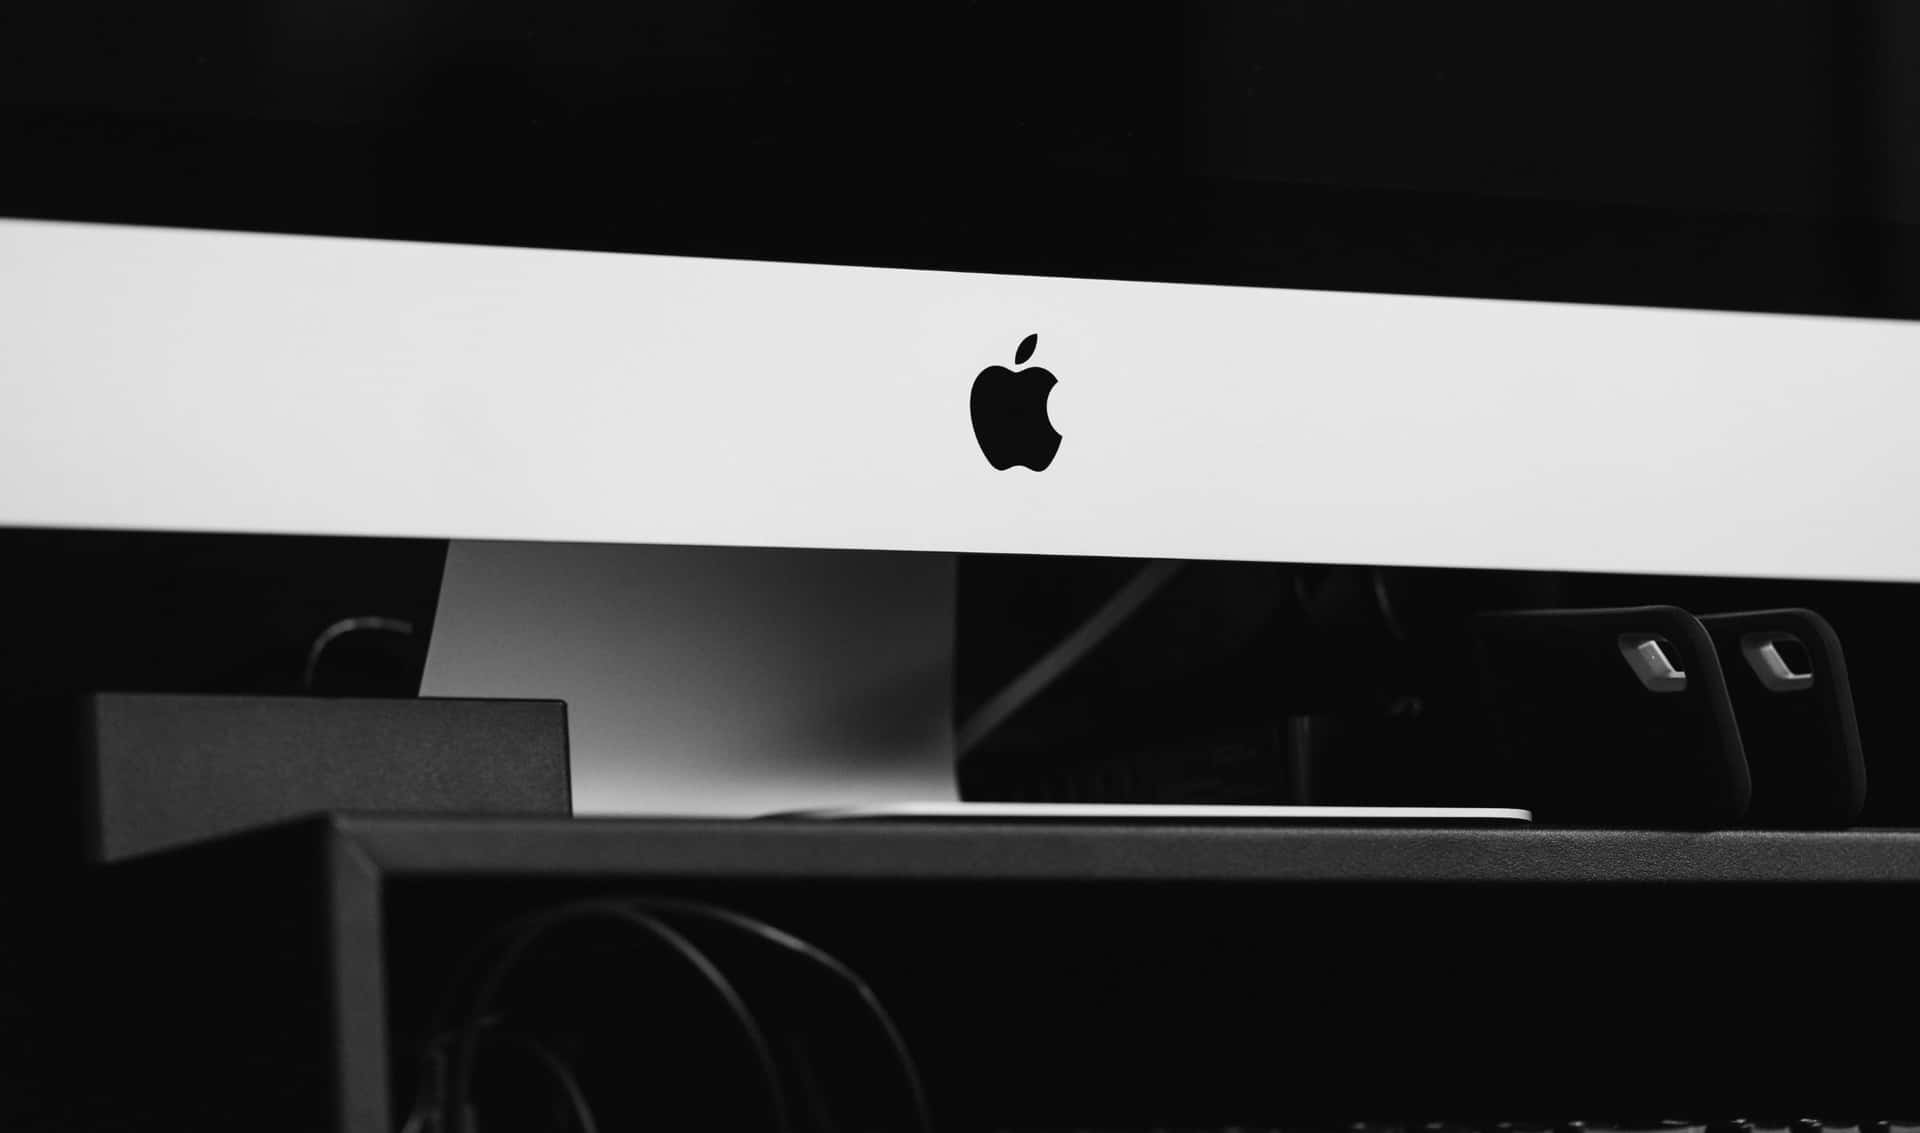 2440x1440 Apple Logo On iMac Background